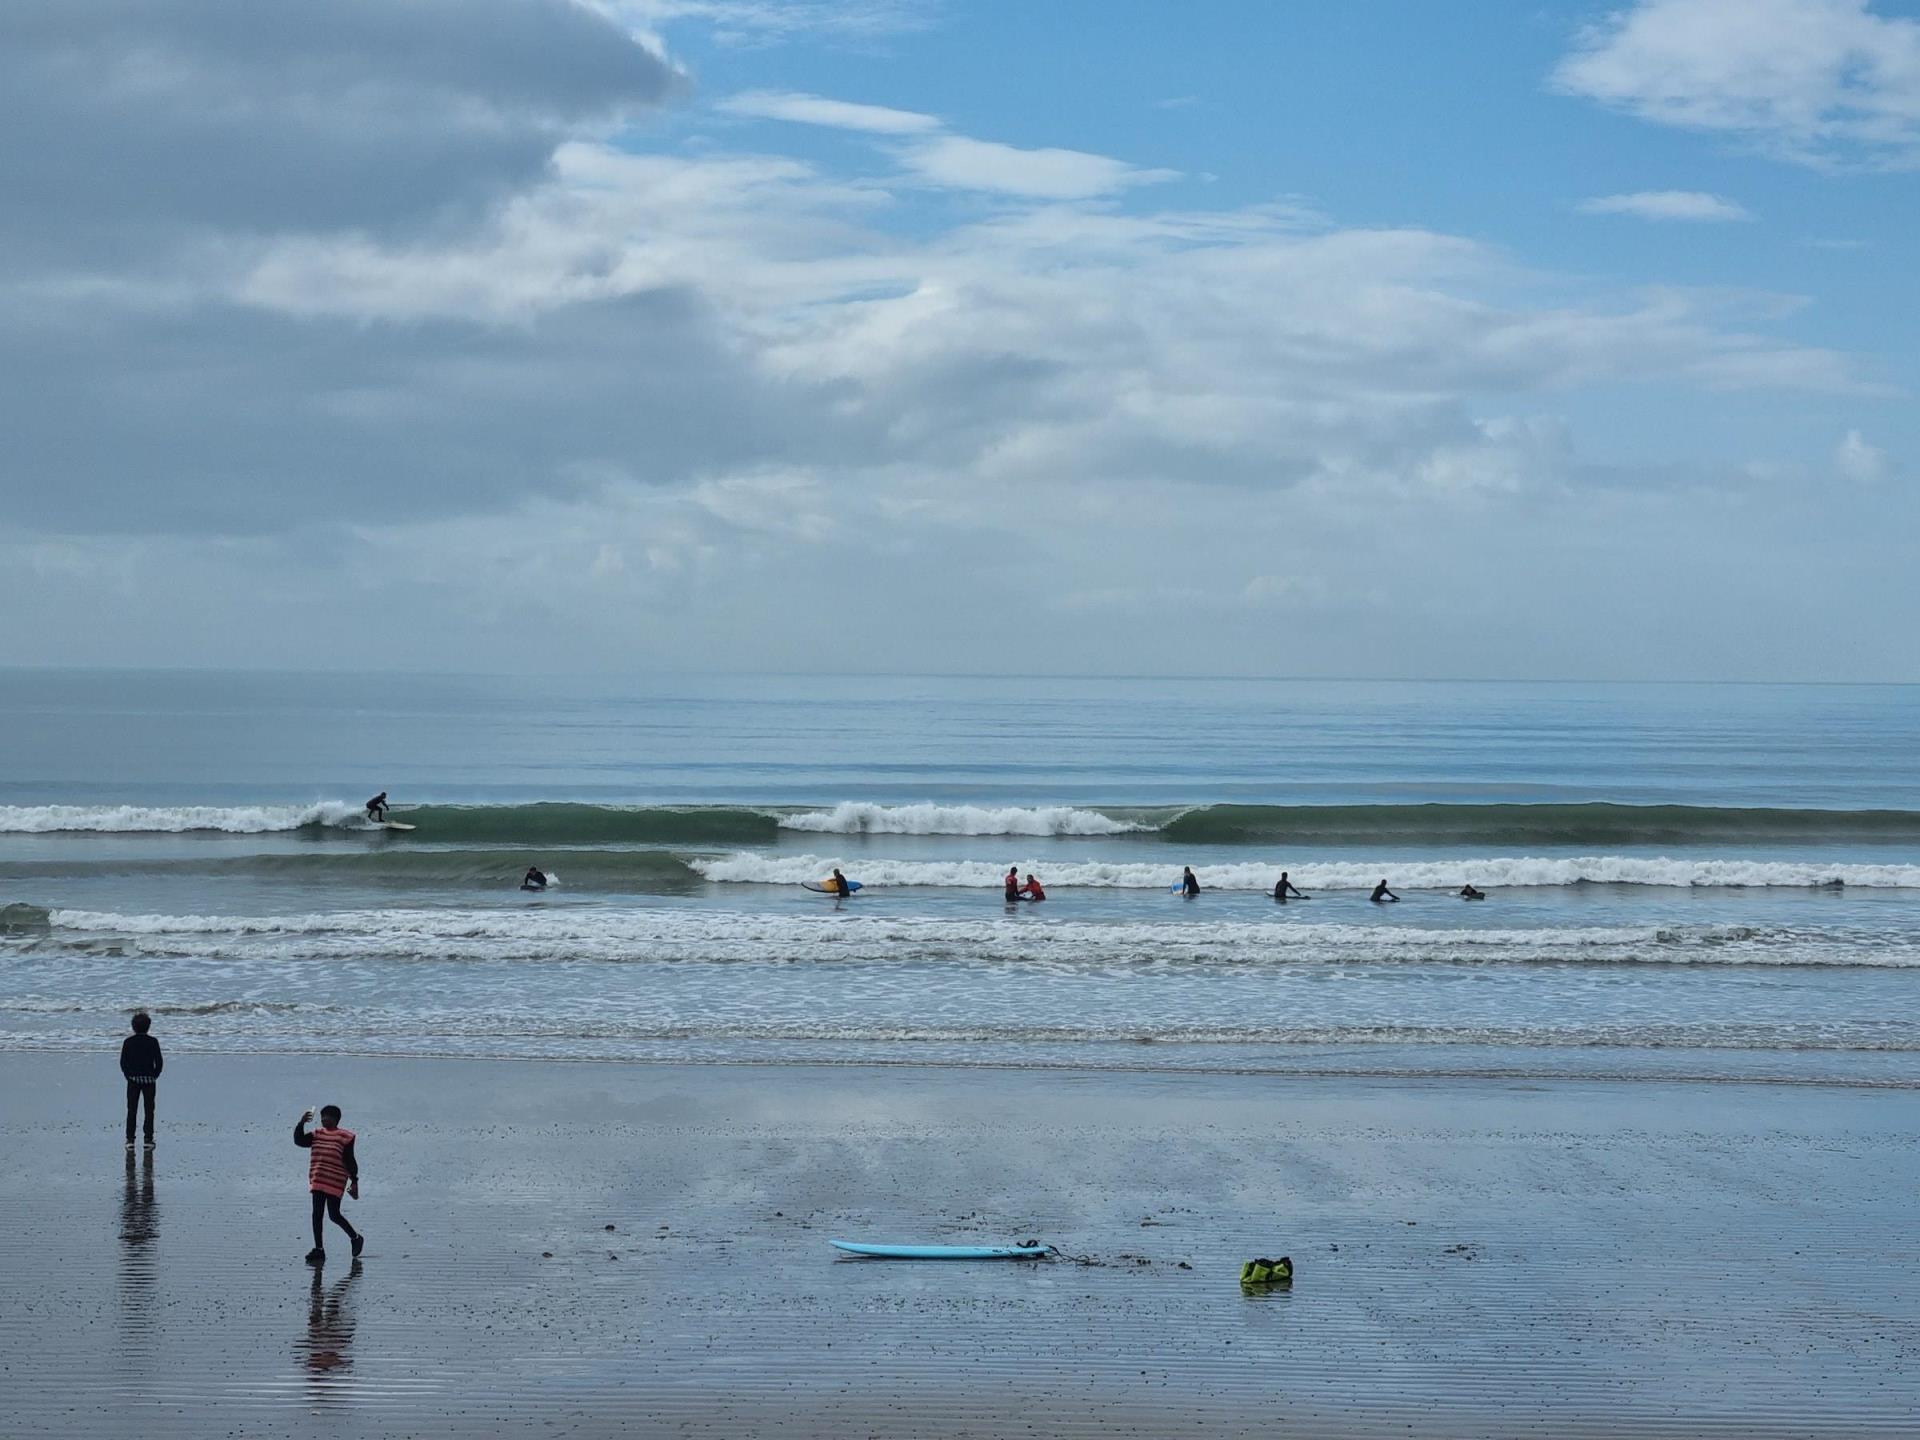 A surf lesson at Ynyslas turn, by Borth